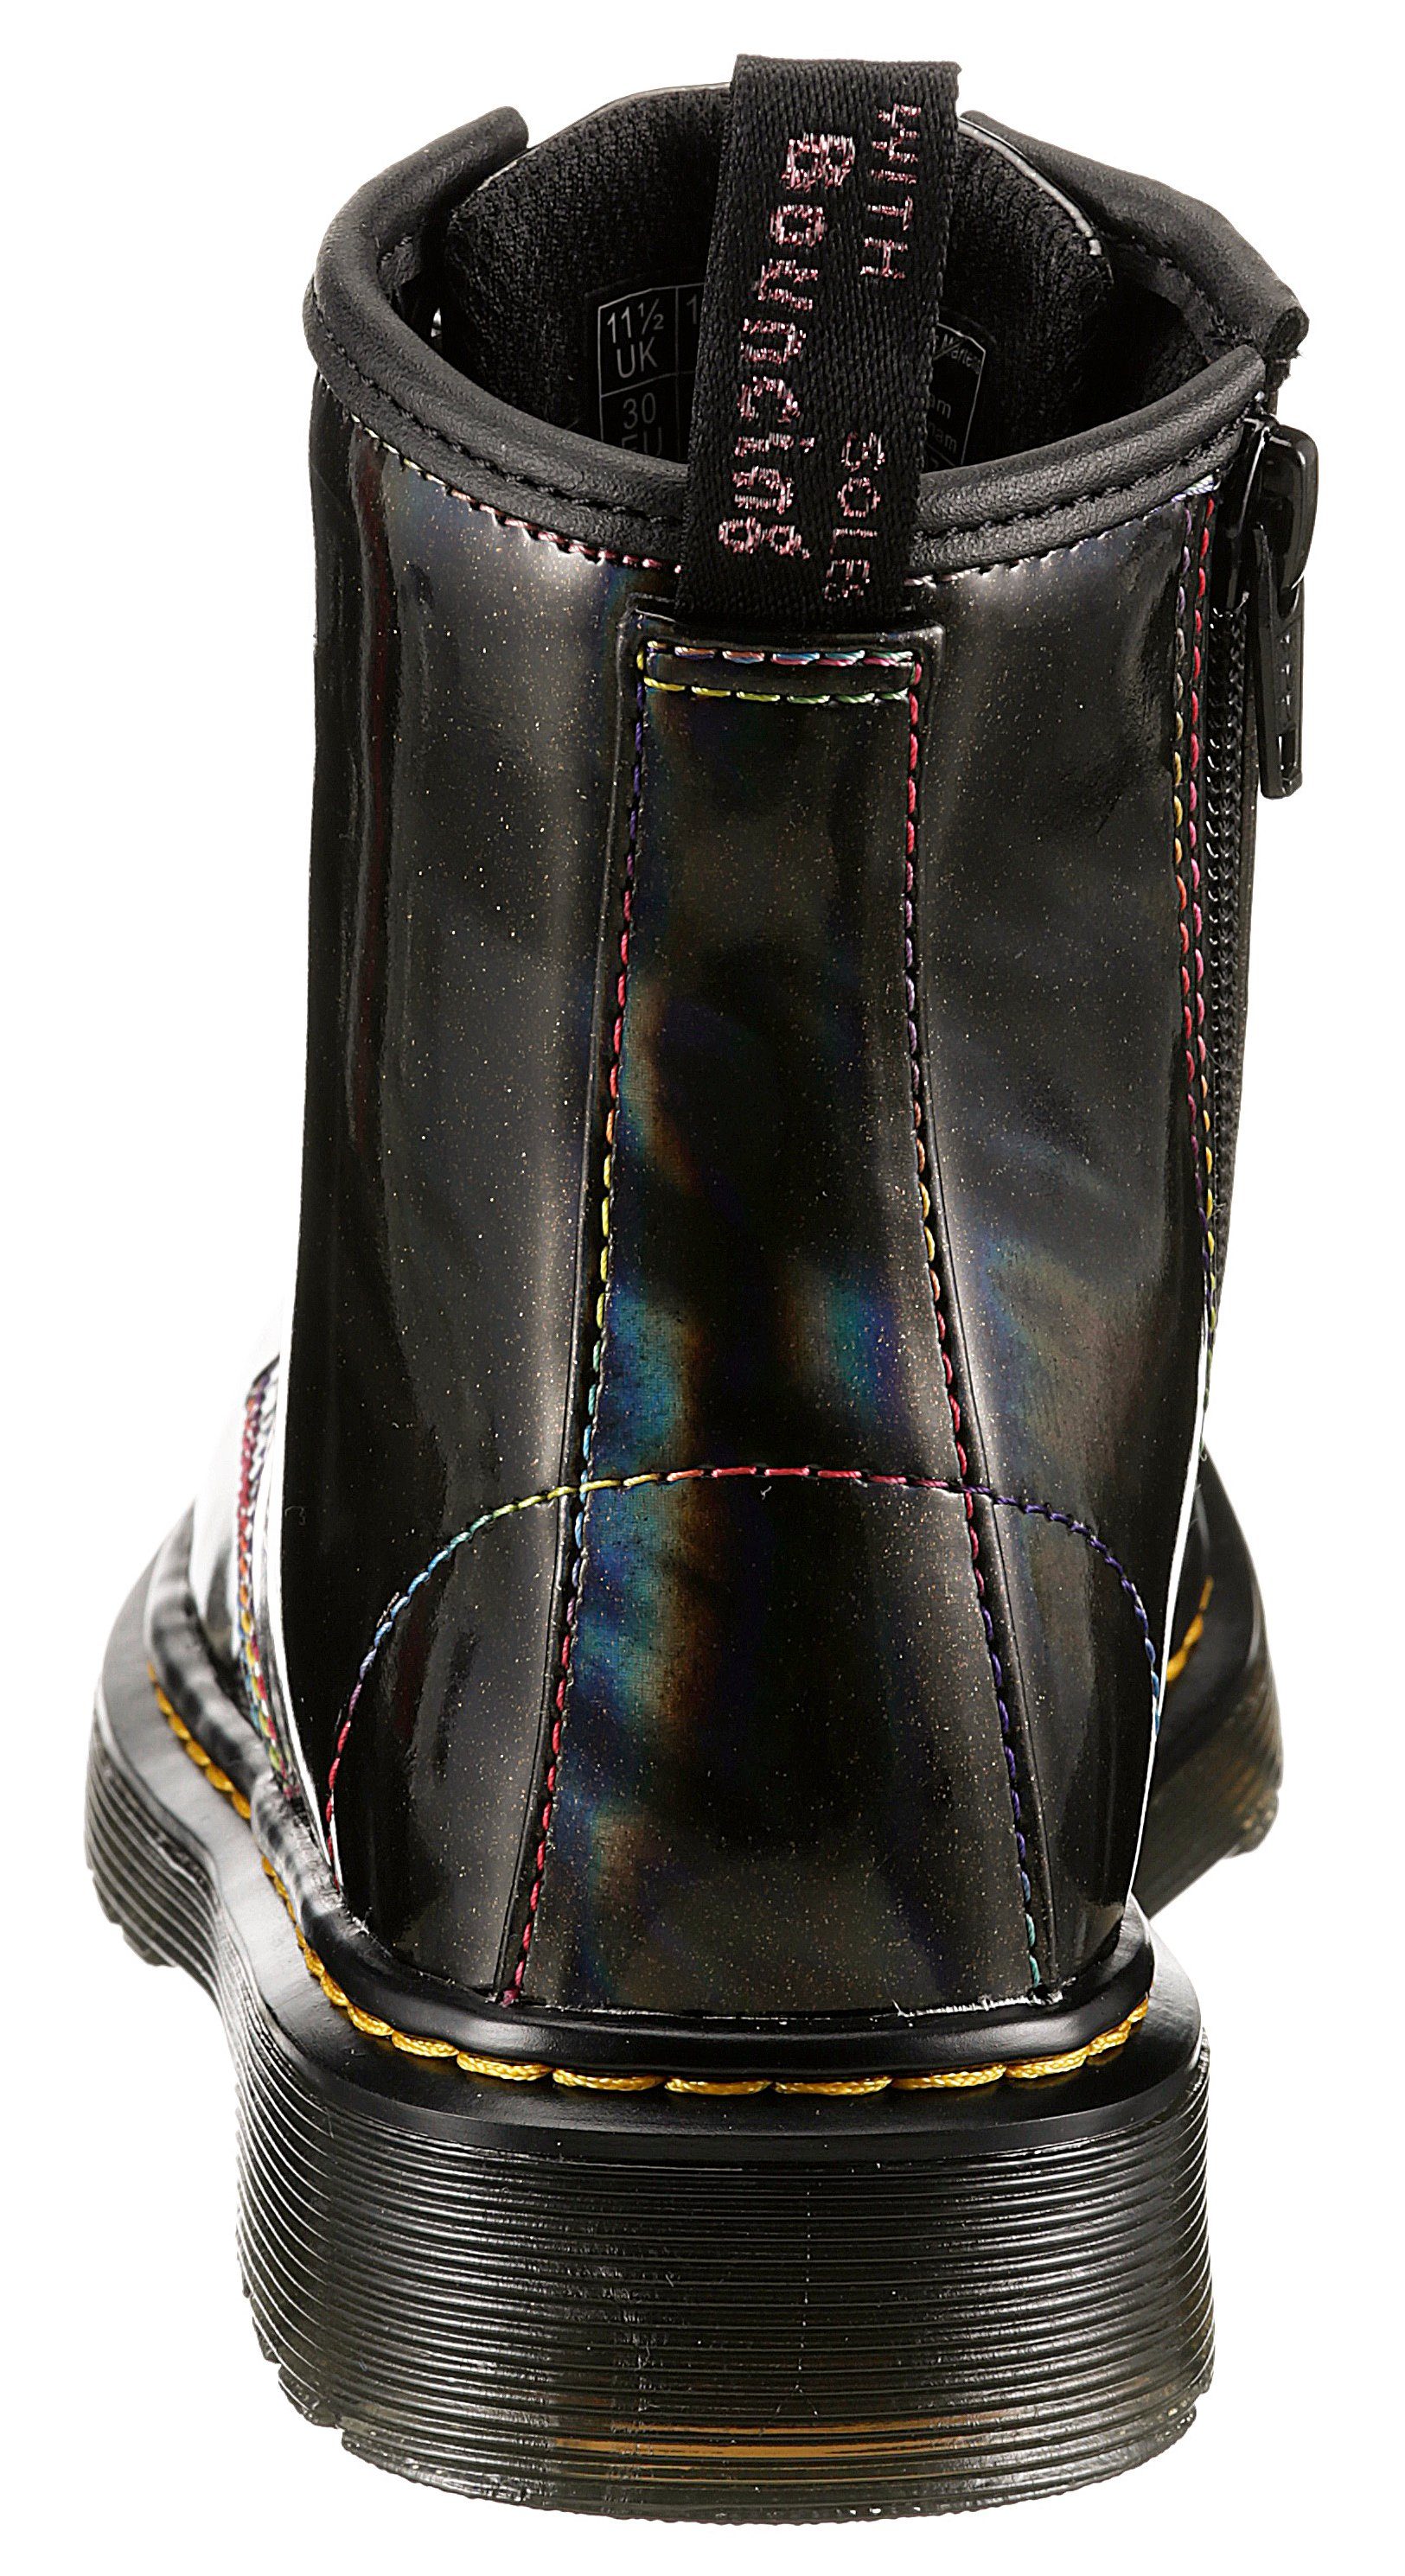 DR. MARTENS mit Schnürstiefel 8 1460 schwarz-regenbogenfarben-irisierend Eye J LIGHTSHOW Boot Schimmer